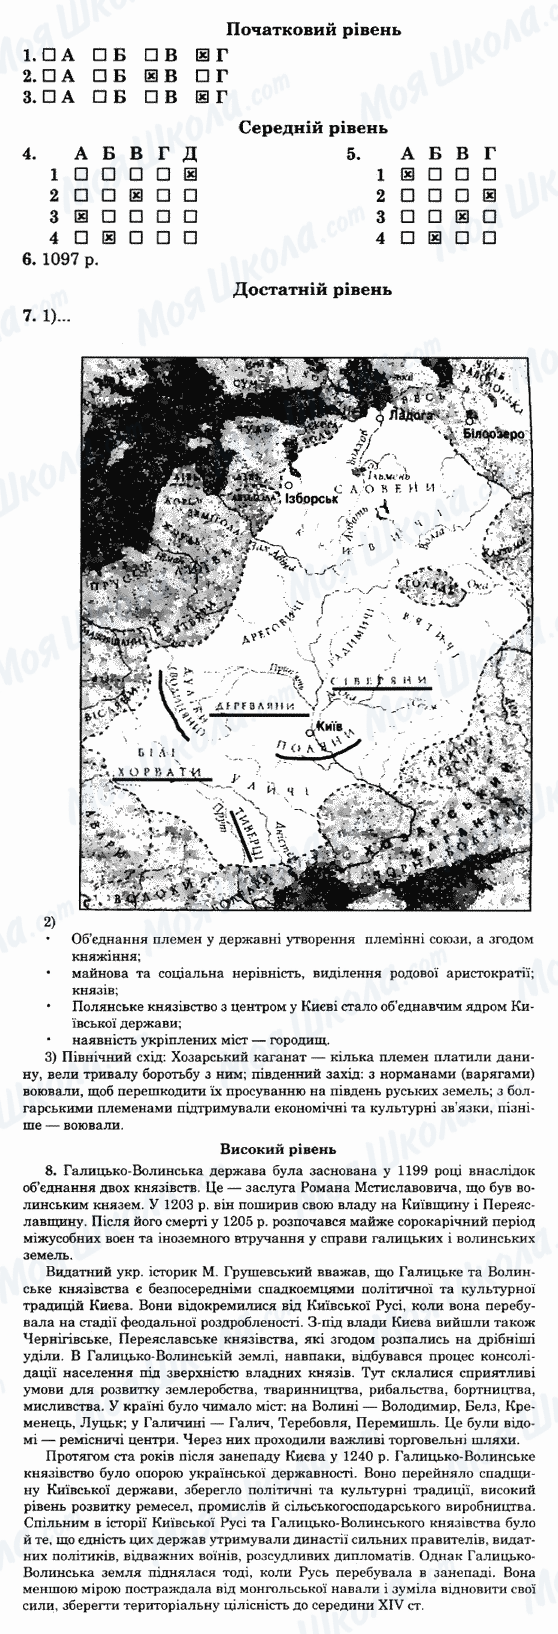 ГДЗ Історія України 7 клас сторінка 3-варіант